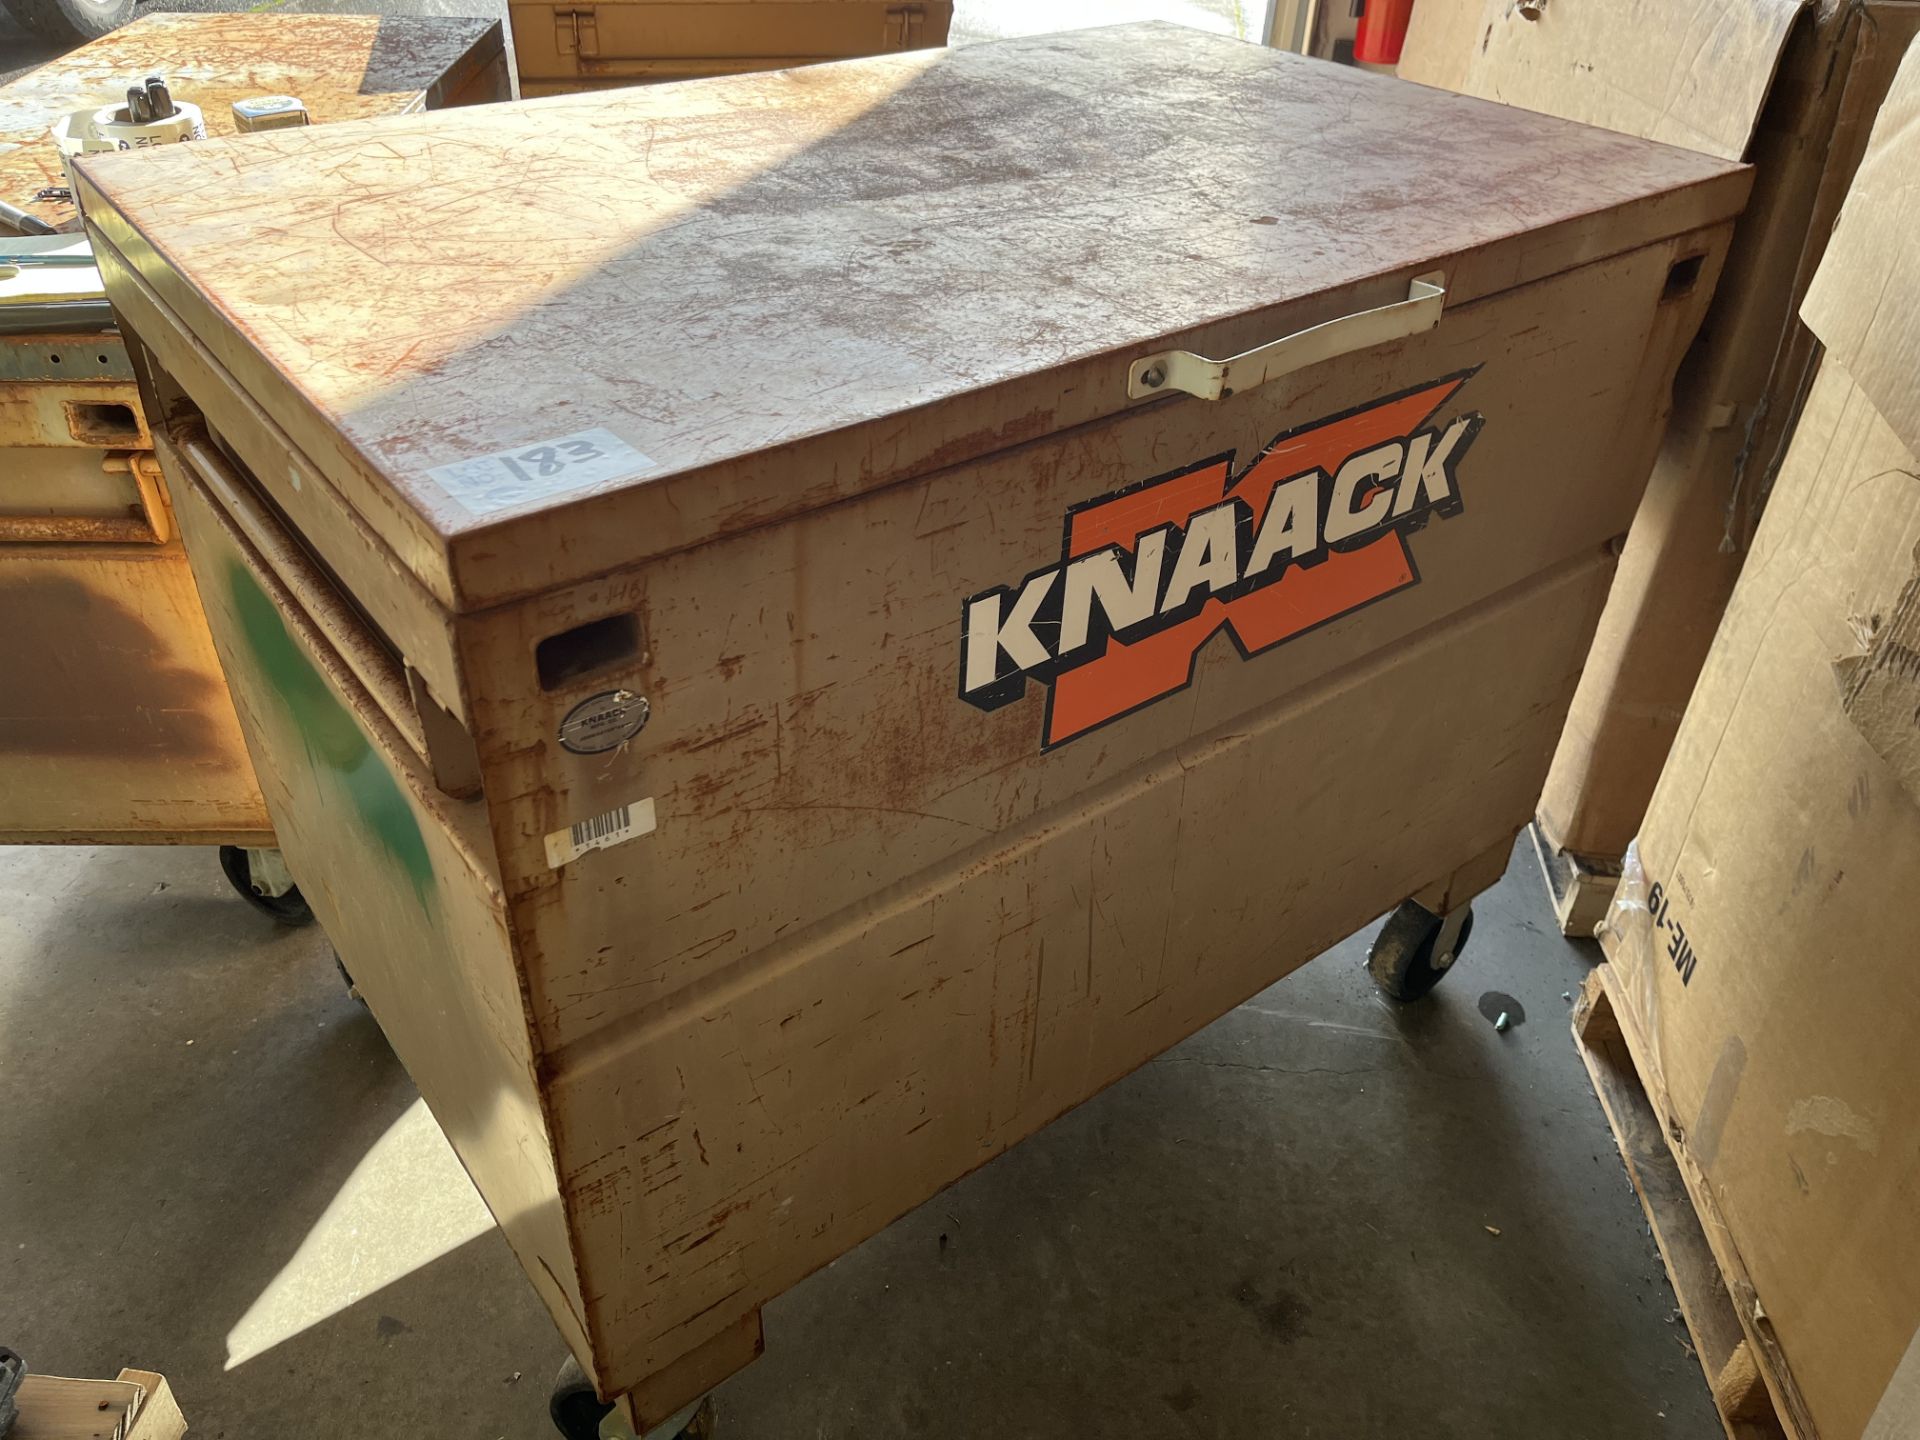 Knaack 30" X 48" X 30" Job Box on casters